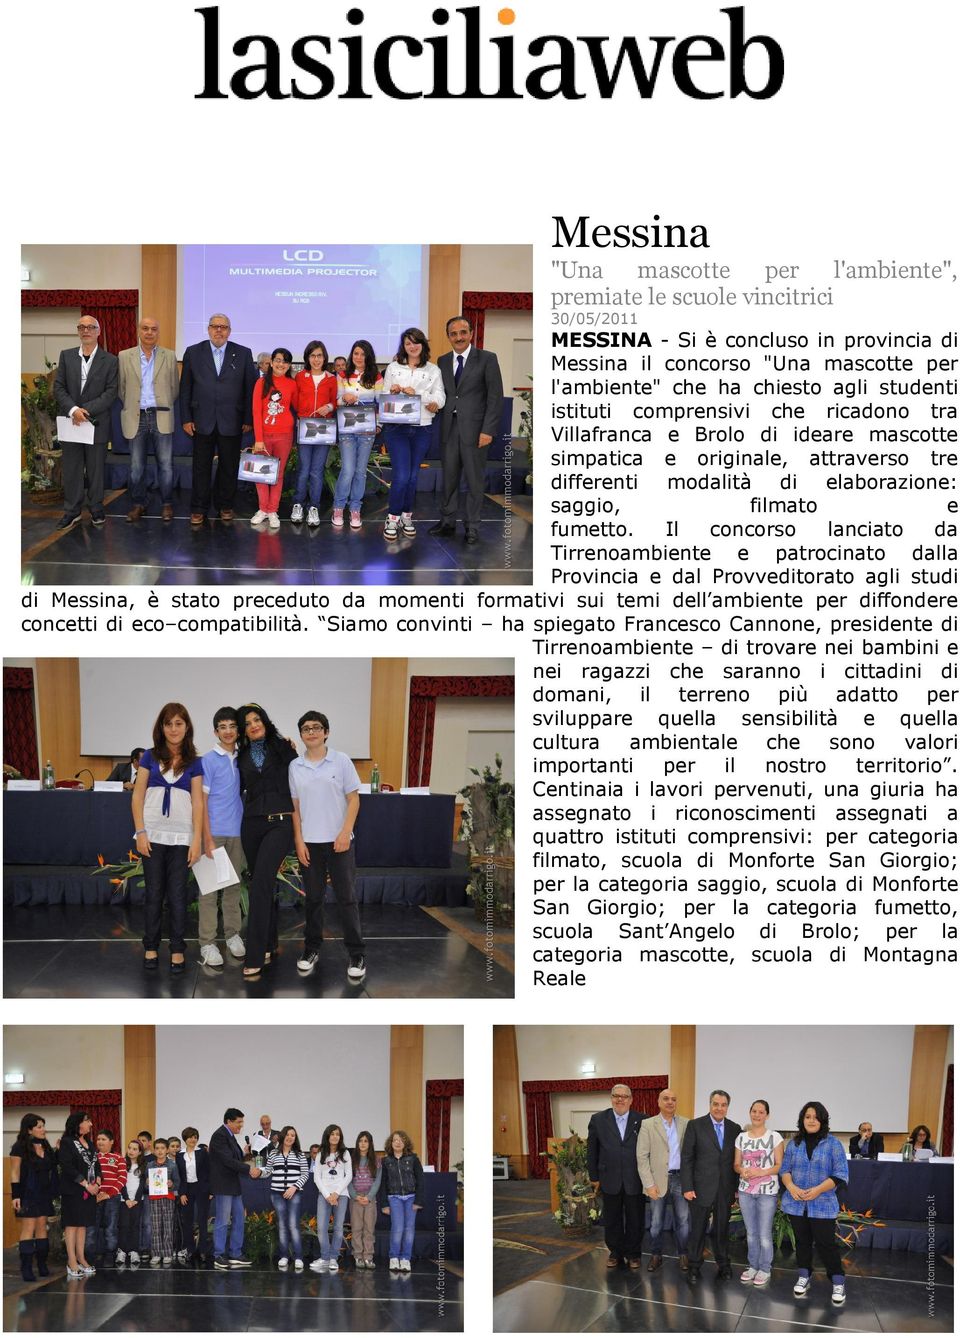 Il concorso lanciato da Tirrenoambiente e patrocinato dalla Provincia e dal Provveditorato agli studi di Messina, è stato preceduto da momenti formativi sui temi dell ambiente per diffondere concetti